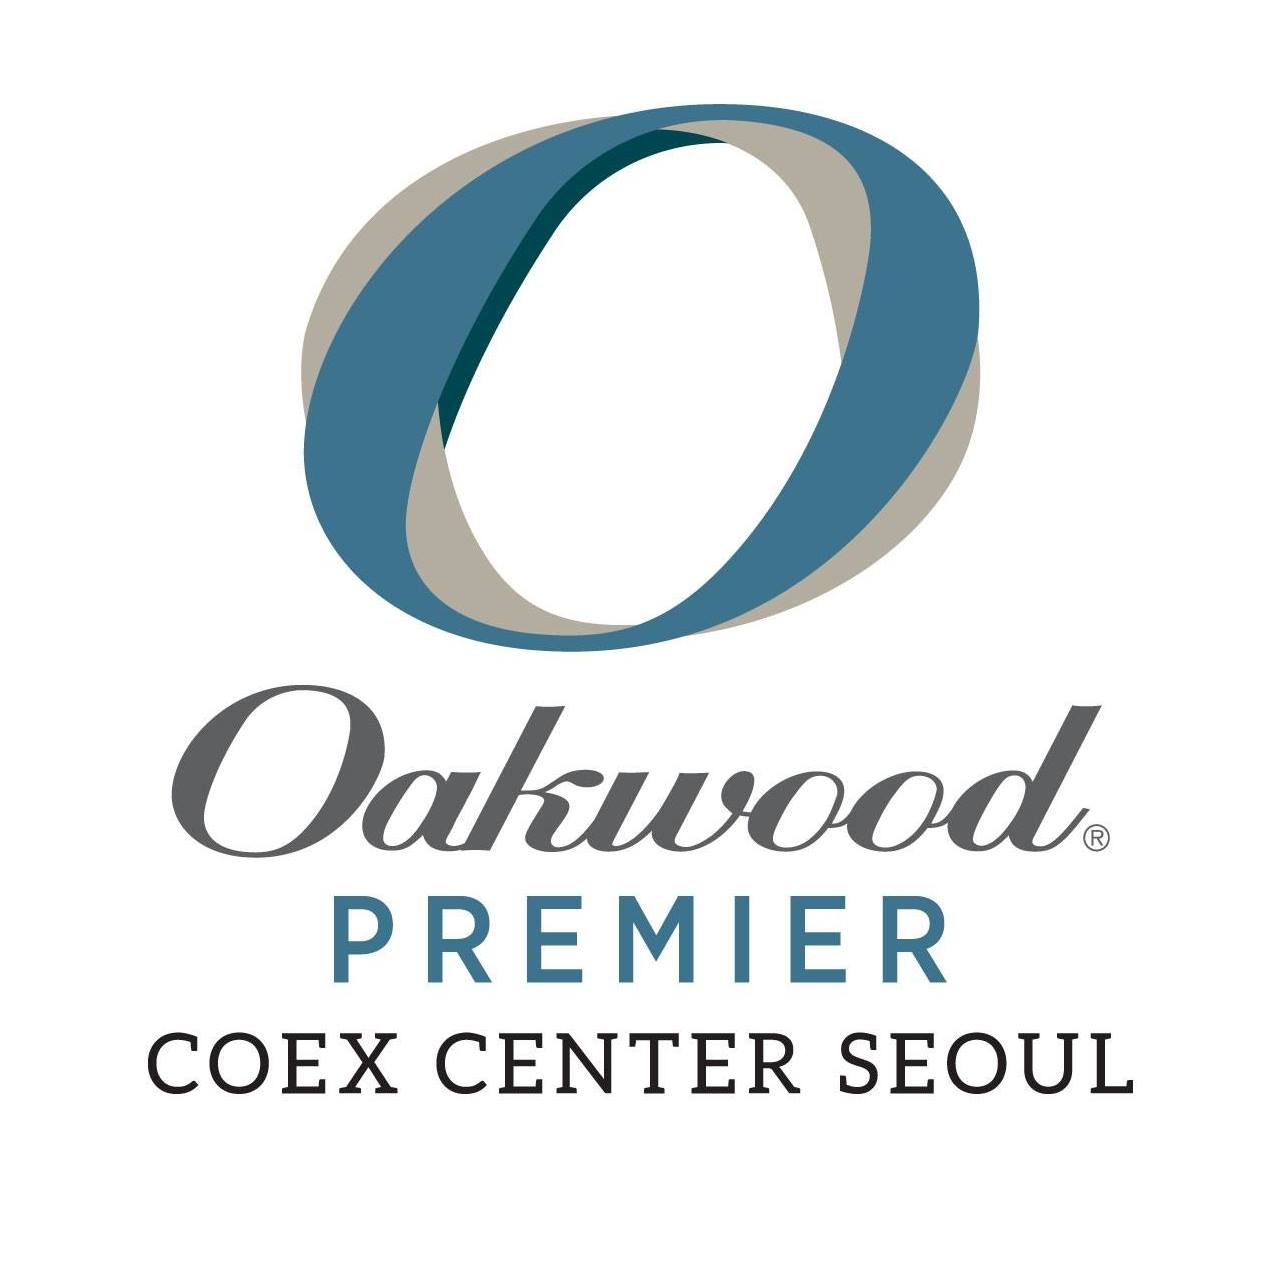 Image result for Oakwood Premier Coex Center Seoul